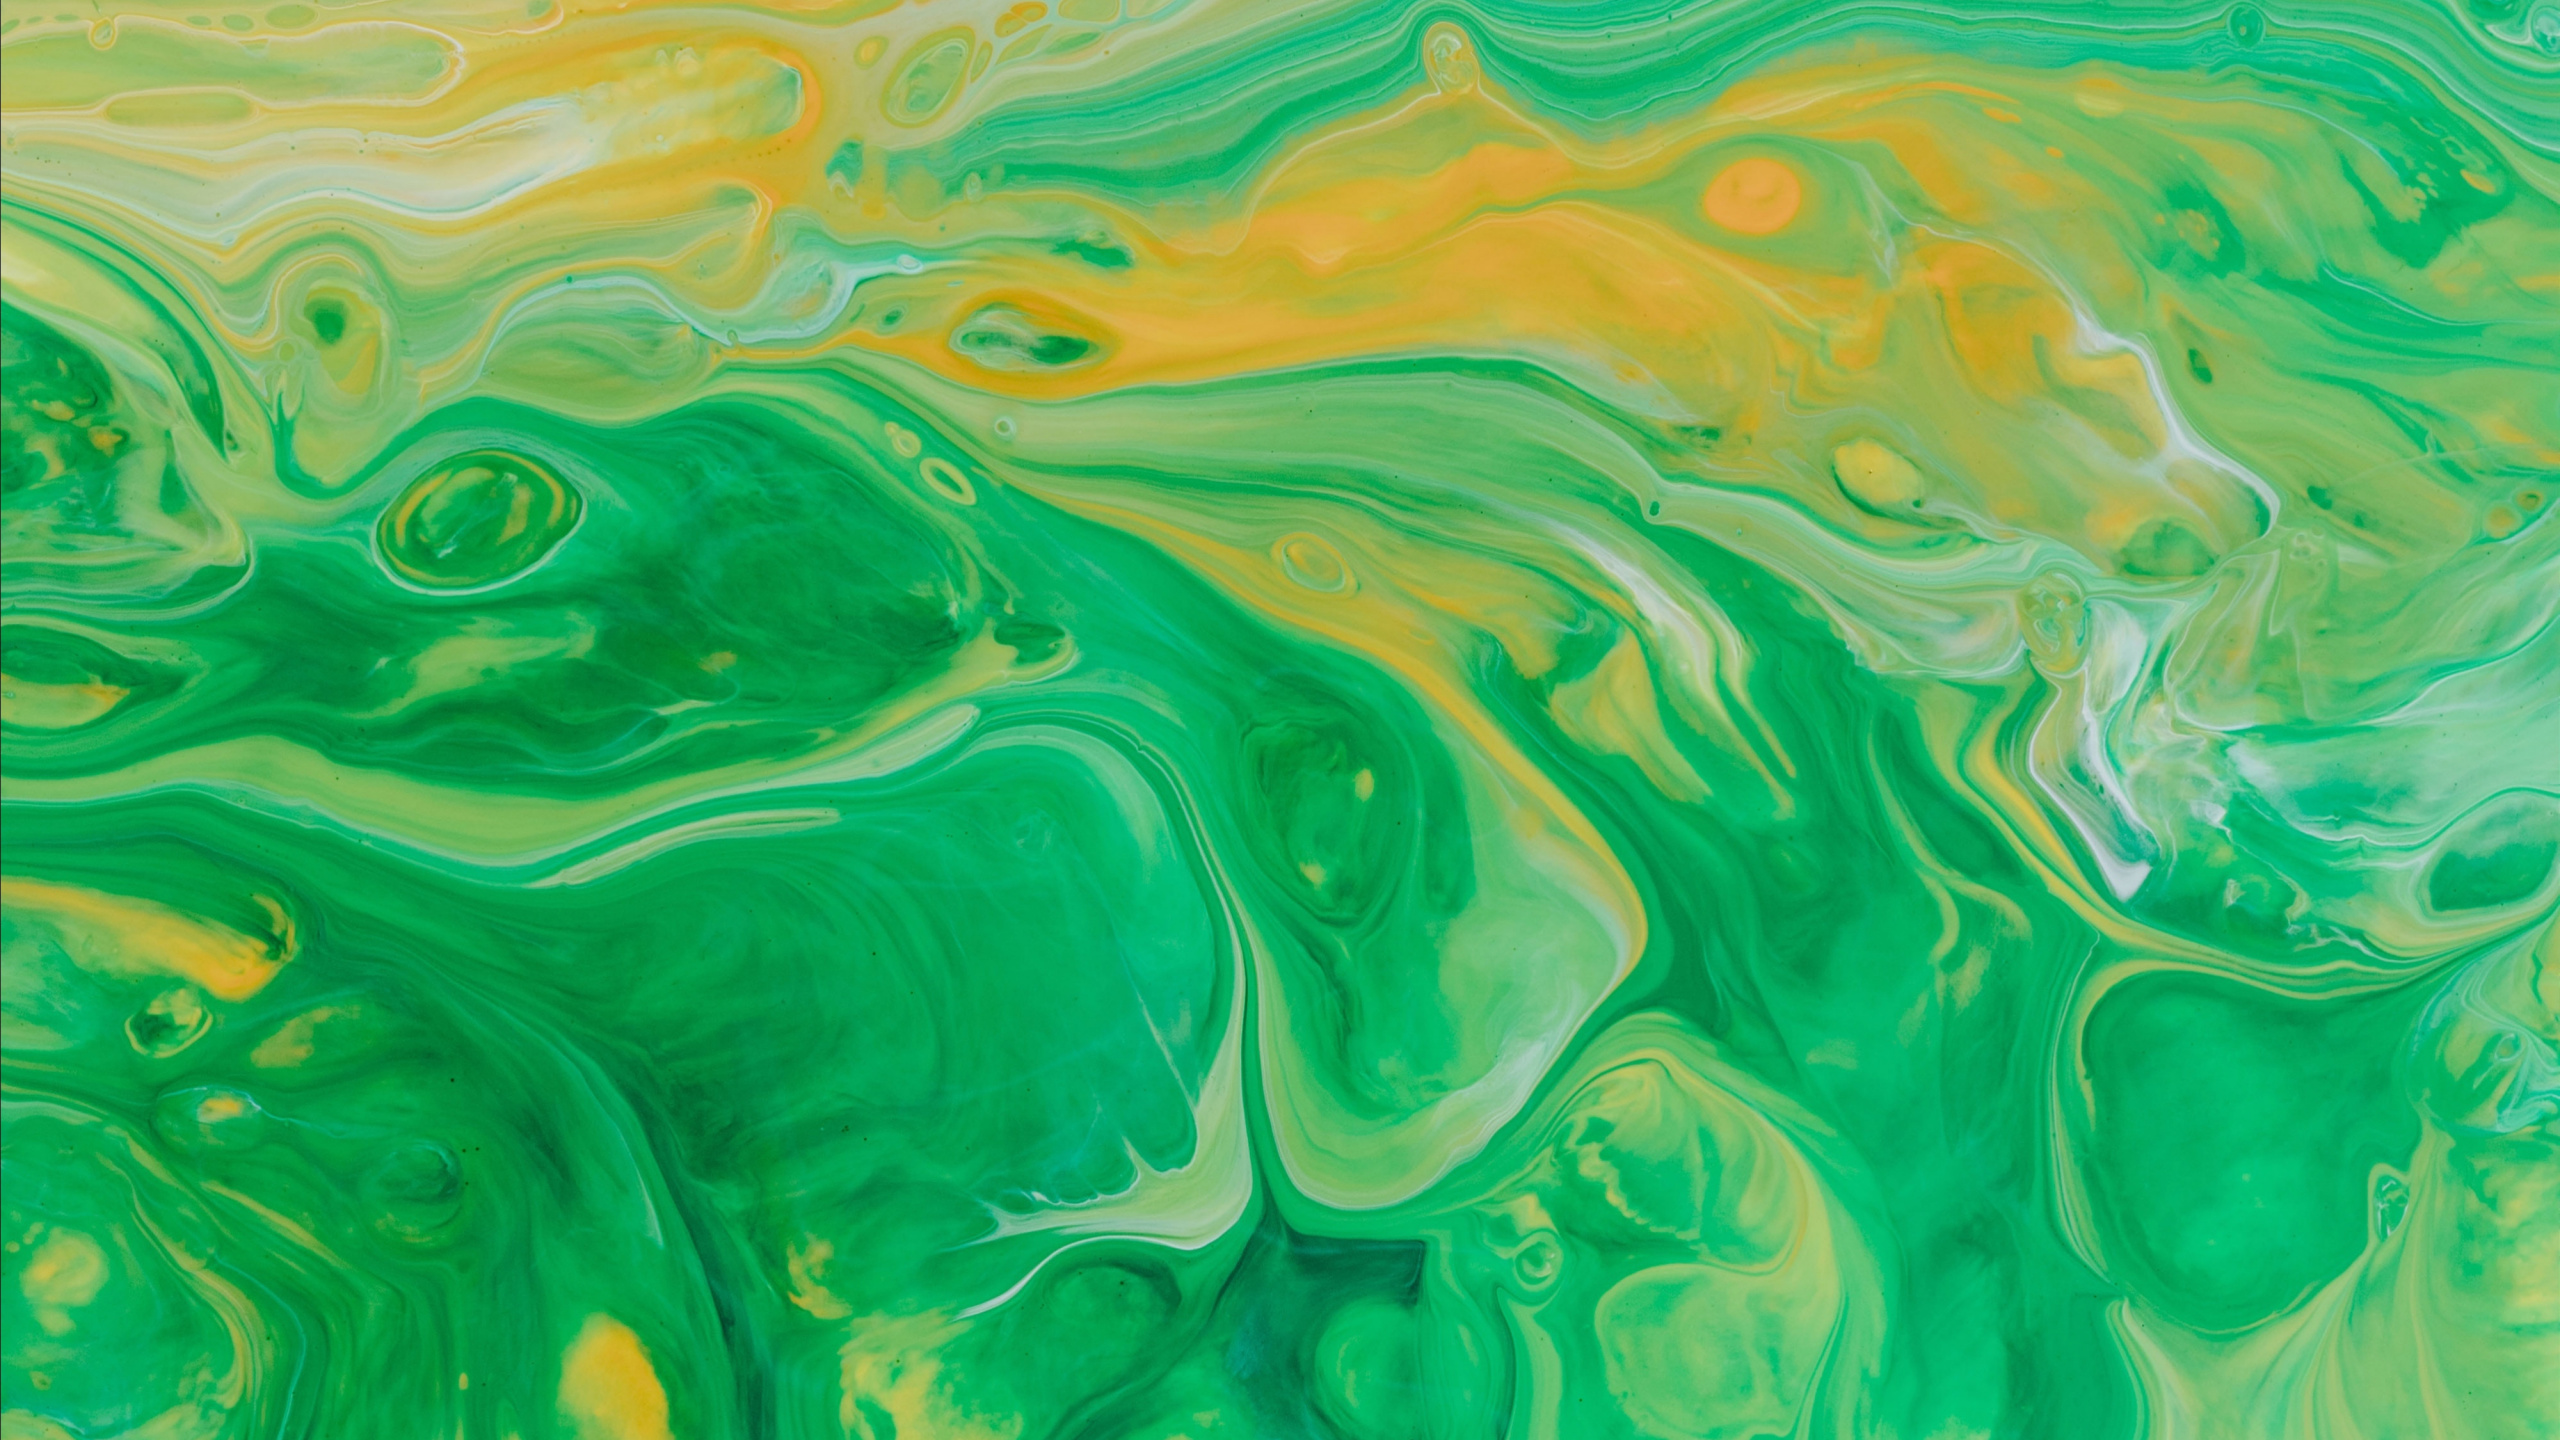 丙烯酸涂料, 水彩画, 绿色的, 艺术, 视觉艺术 壁纸 2560x1440 允许